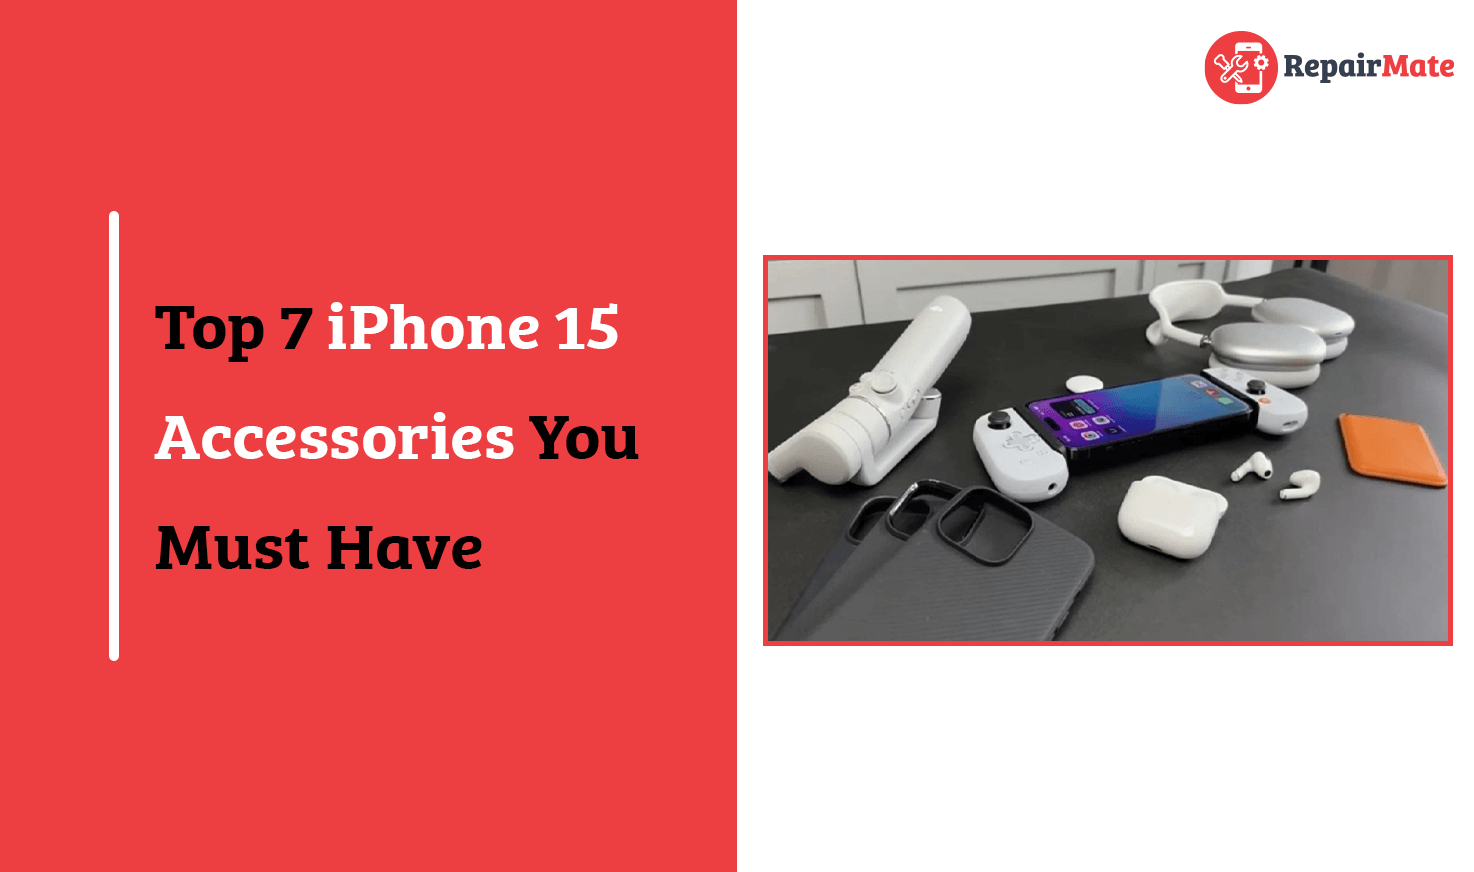 iPhone 15 accessories